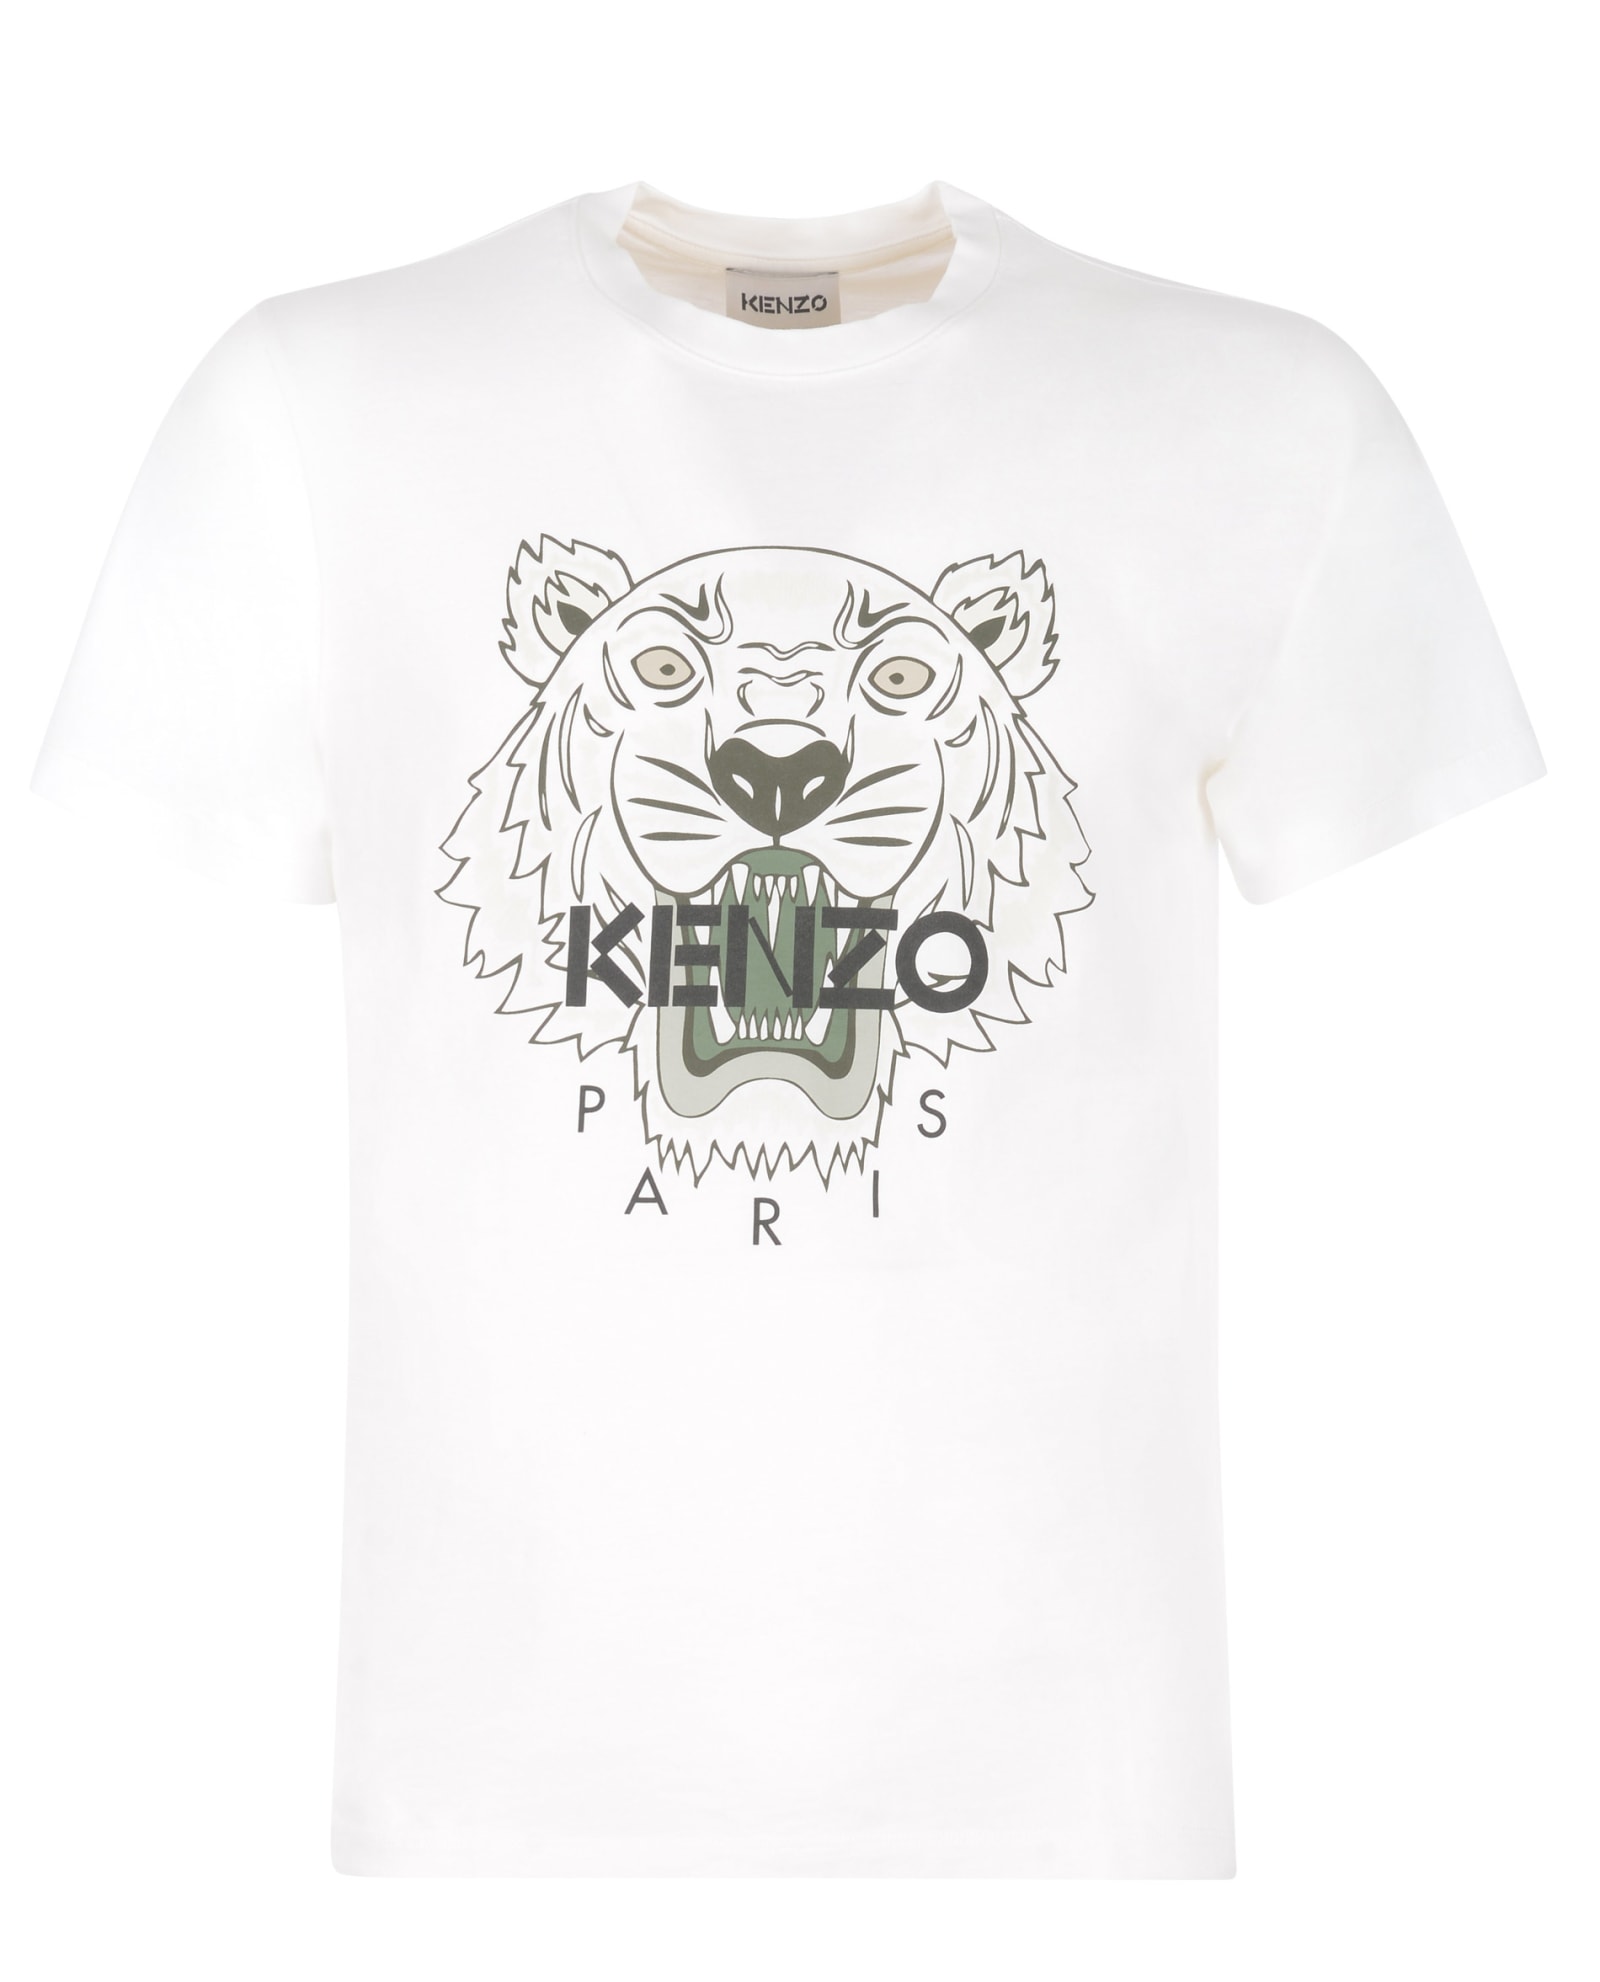 KENZO T-SHIRT,FB55TS0204YA 01B